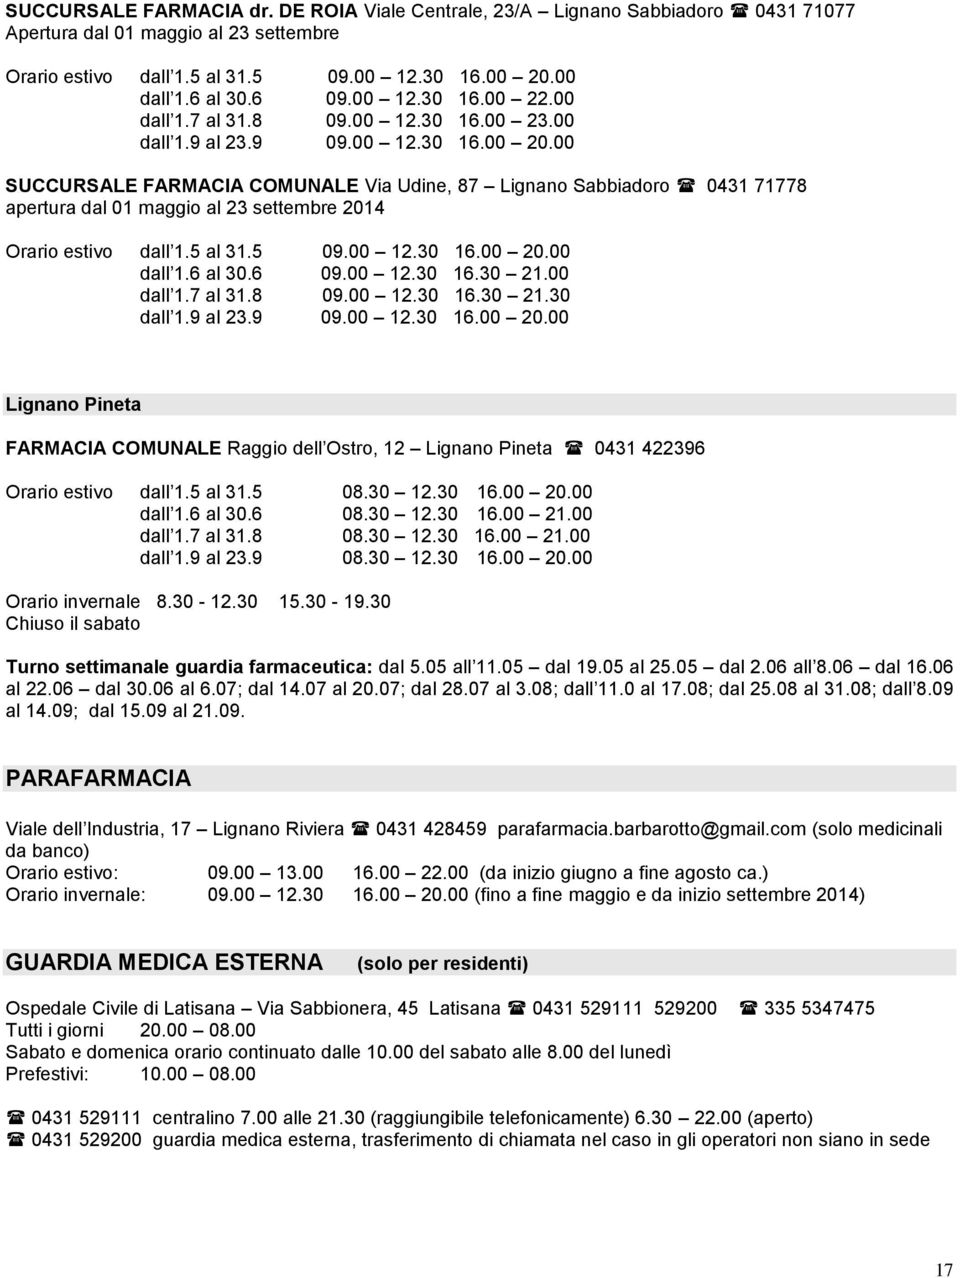 00 SUCCURSALE FARMACIA COMUNALE Via Udine, 87 Lignano Sabbiadoro 0431 71778 apertura dal 01 maggio al 23 settembre 2014 Orario estivo dall 1.5 al 31.5 09.00 12.30 16.00 20.00 dall 1.6 al 30.6 09.